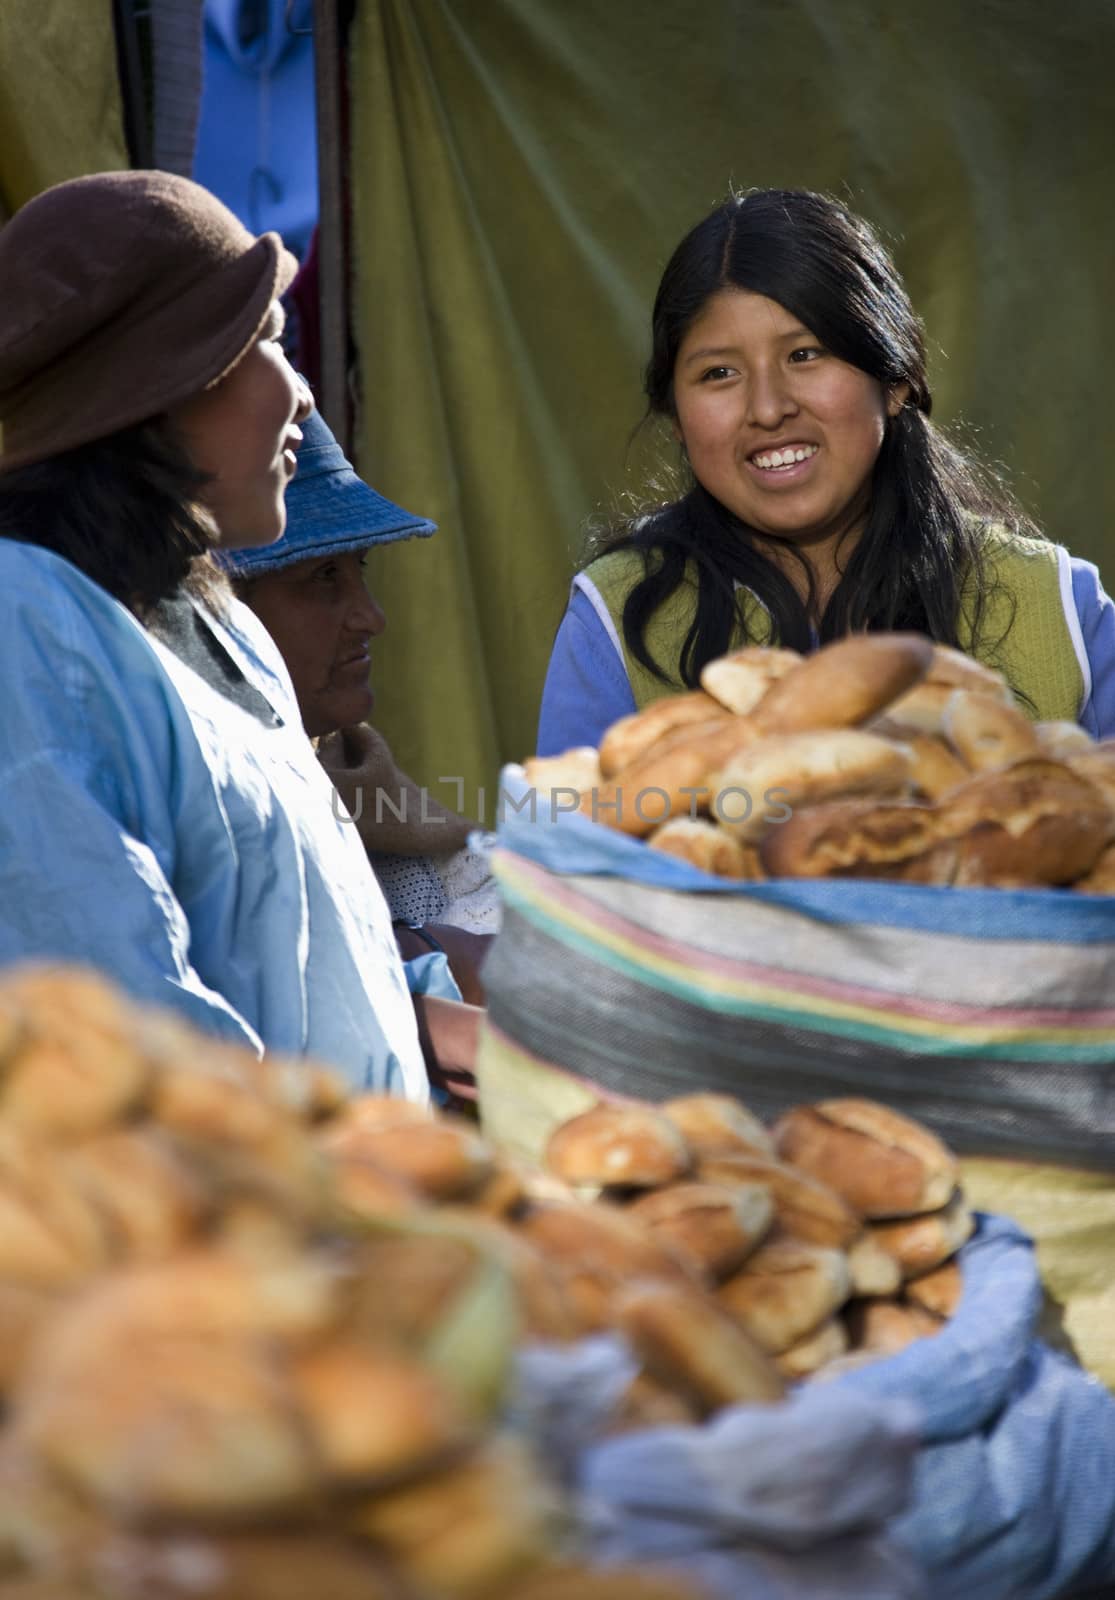 Local women on a market - La Paz - Bolivia by SteveAllenPhoto